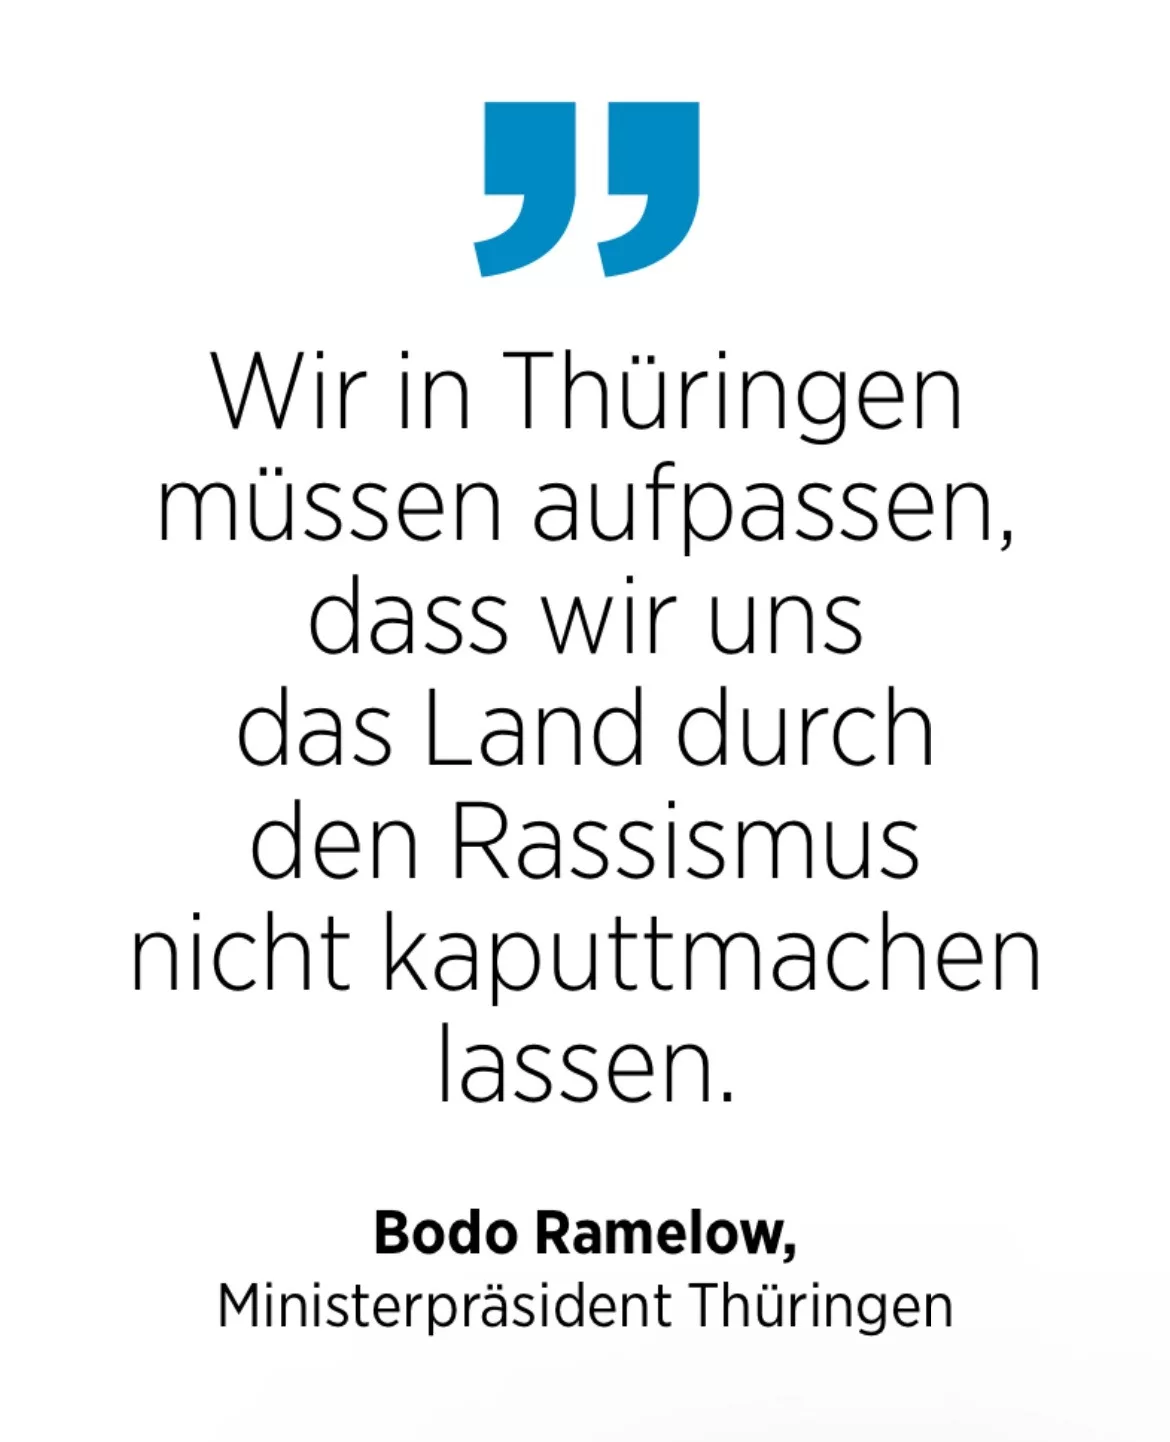 Bodo Ramelow, Ministerpräsident Thüringen: Wir in Thüringen müssen aufpassen, dass wir uns das Land durch den Rassismus nicht kaputtmachen lassen.